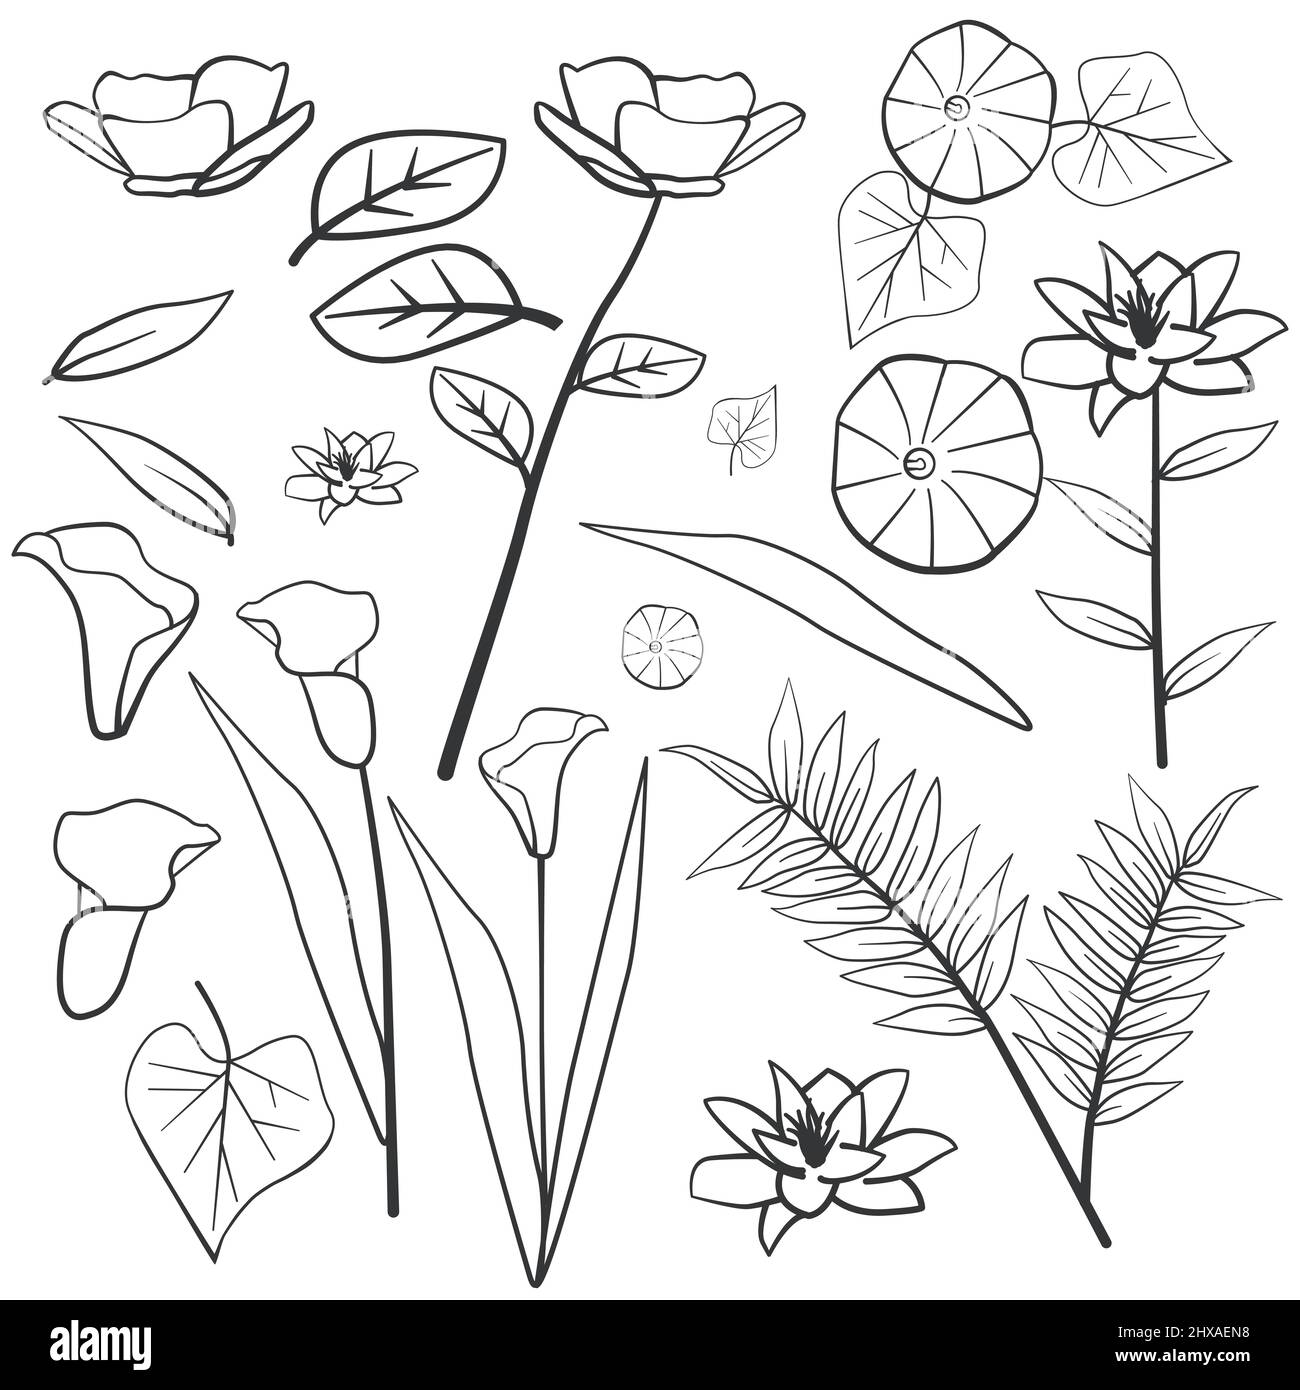 Daust Buttercup Arum Lily mattina Gloria foglia fiore floreale silhouette contorno elemento linea Illustrazione Vettoriale